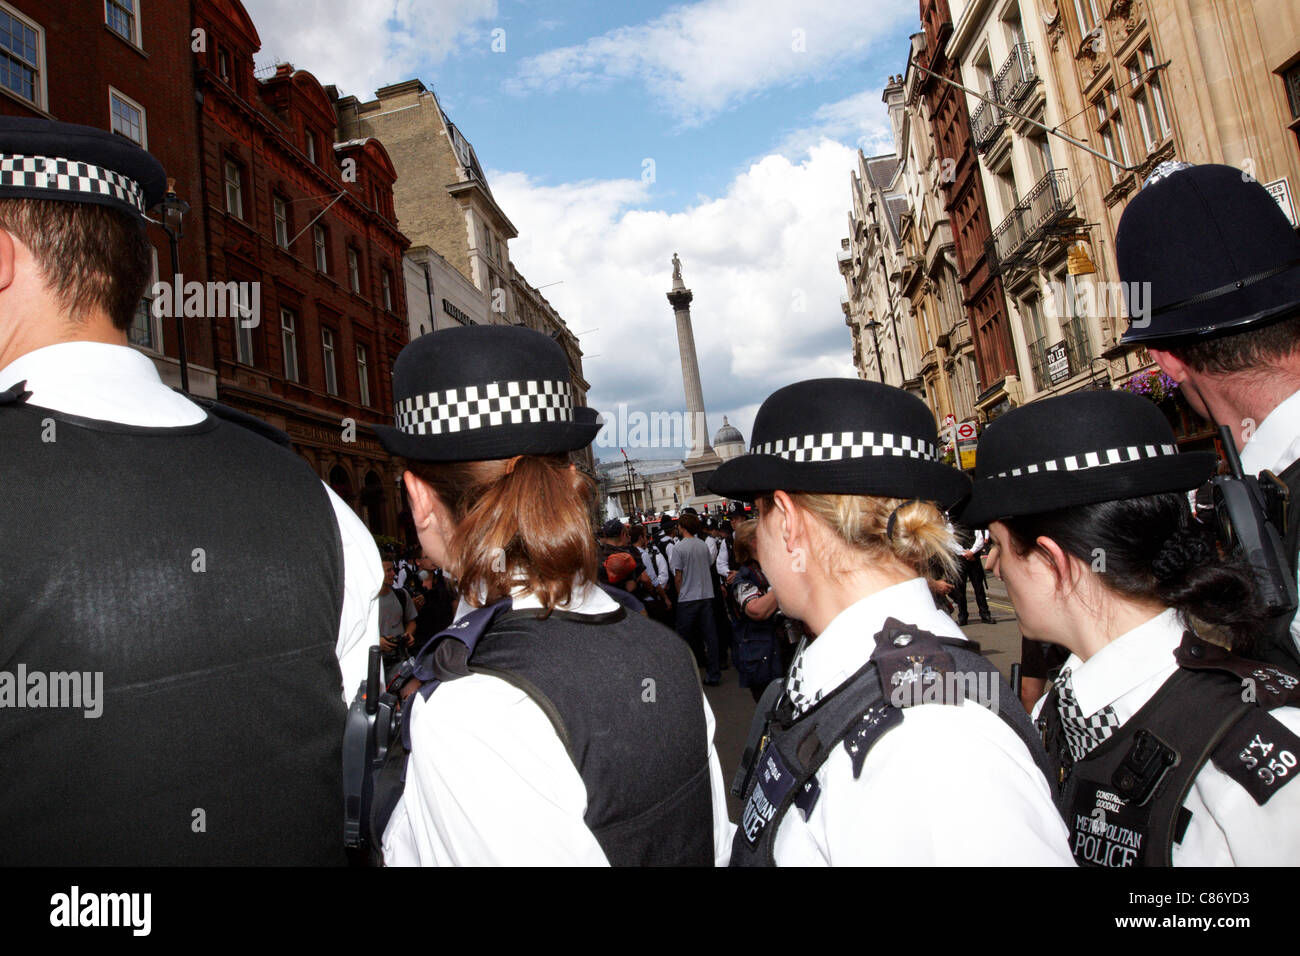 Polizei Wasserkocher eine kleine Gruppe, einige maskiert auf Whitehall nach einer friedlichen J30 union Marsch und machen eine Reihe von Verhaftungen Stockfoto